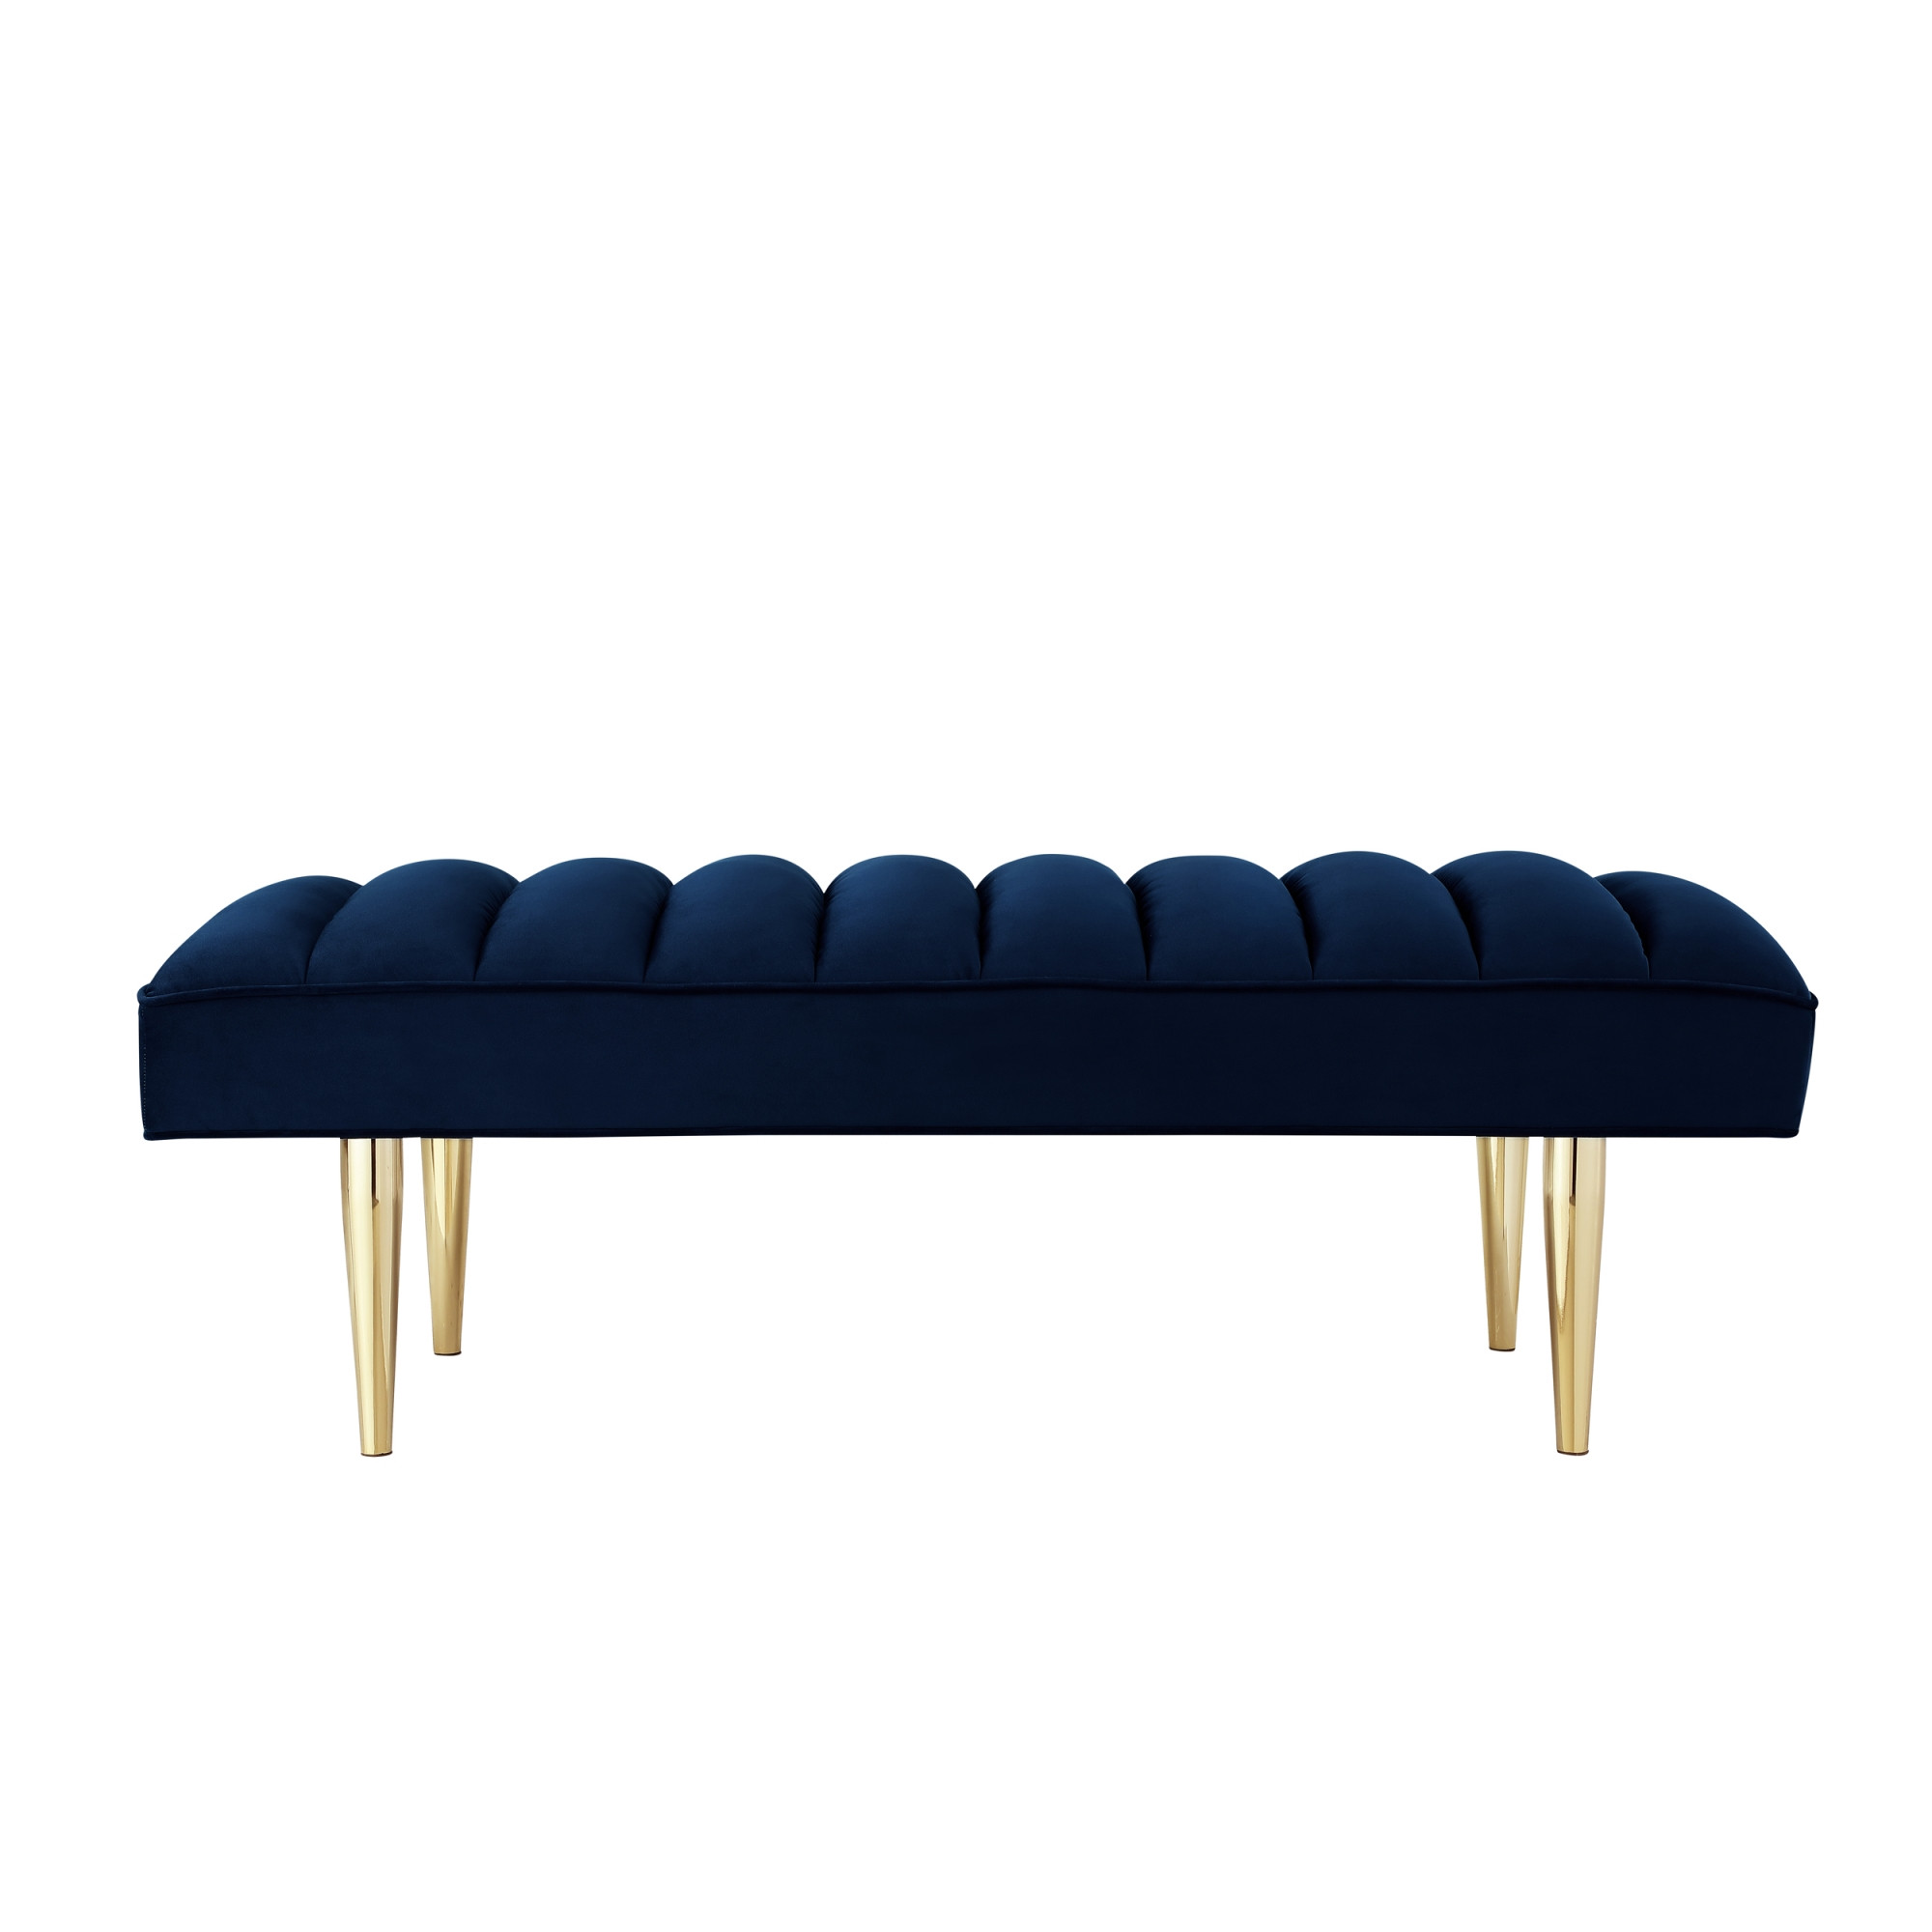 53" Navy Blue And Gold Upholstered Velvet Bench-490947-1